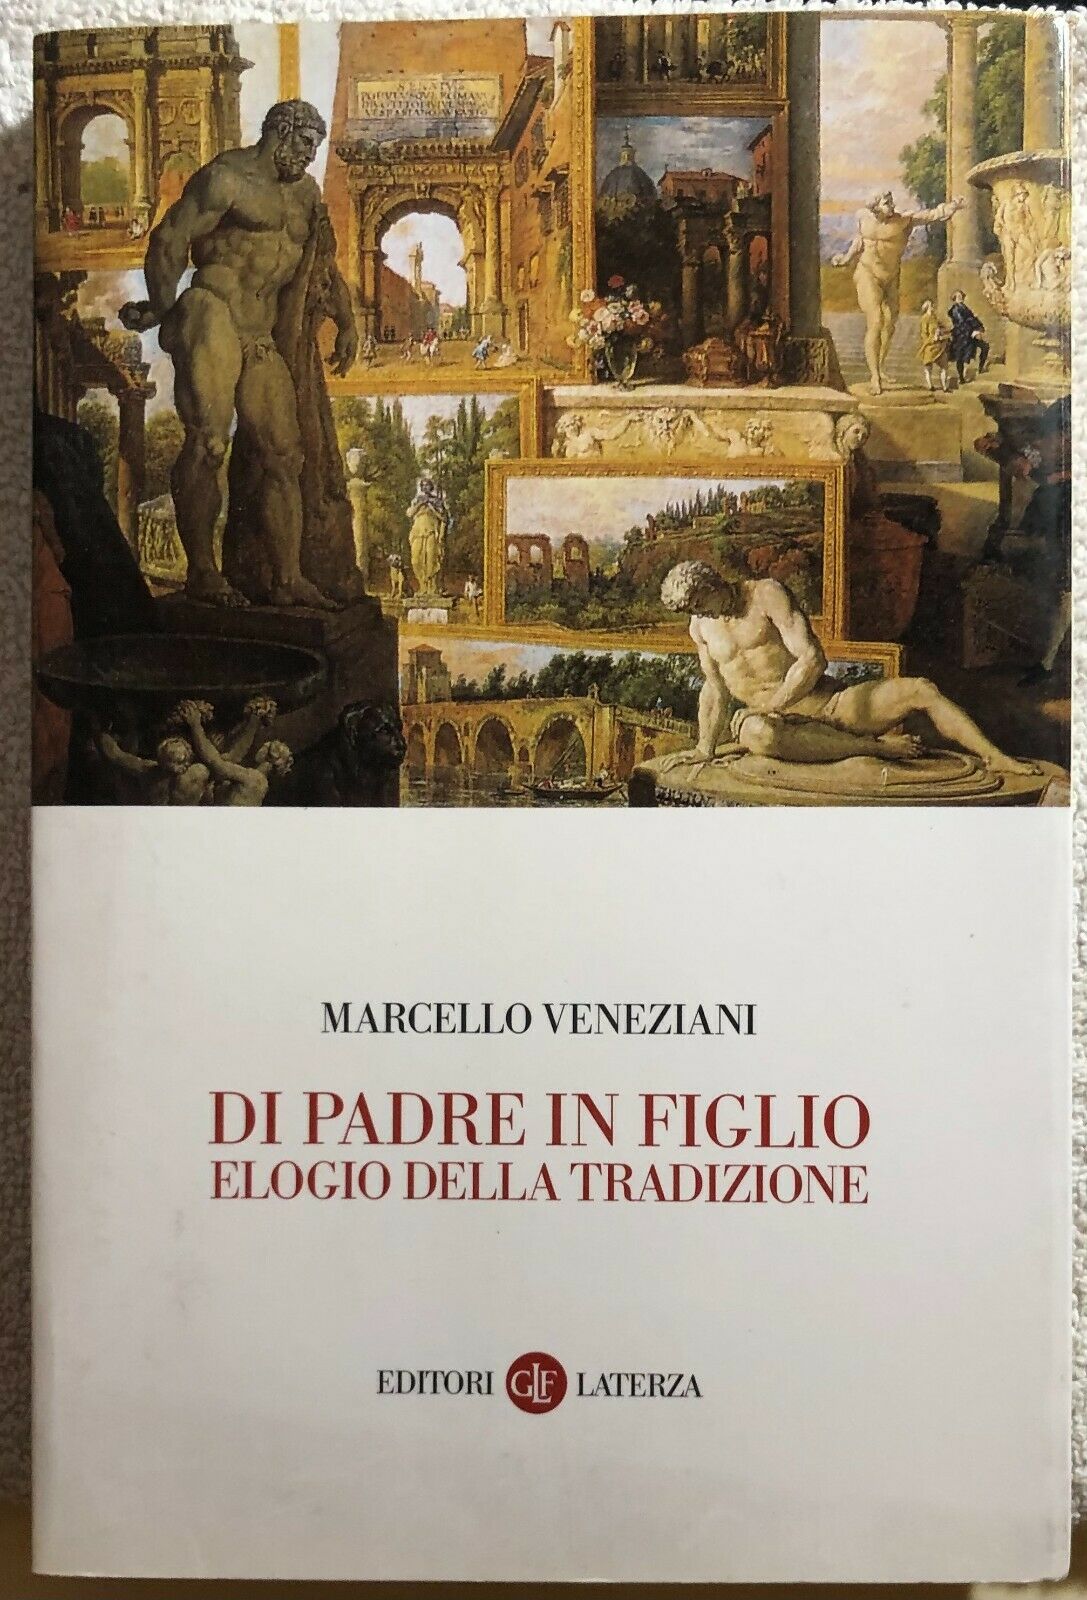 Di padre in figlio elogio della tradizione di Marcello Veneziani,  2001,  Editor